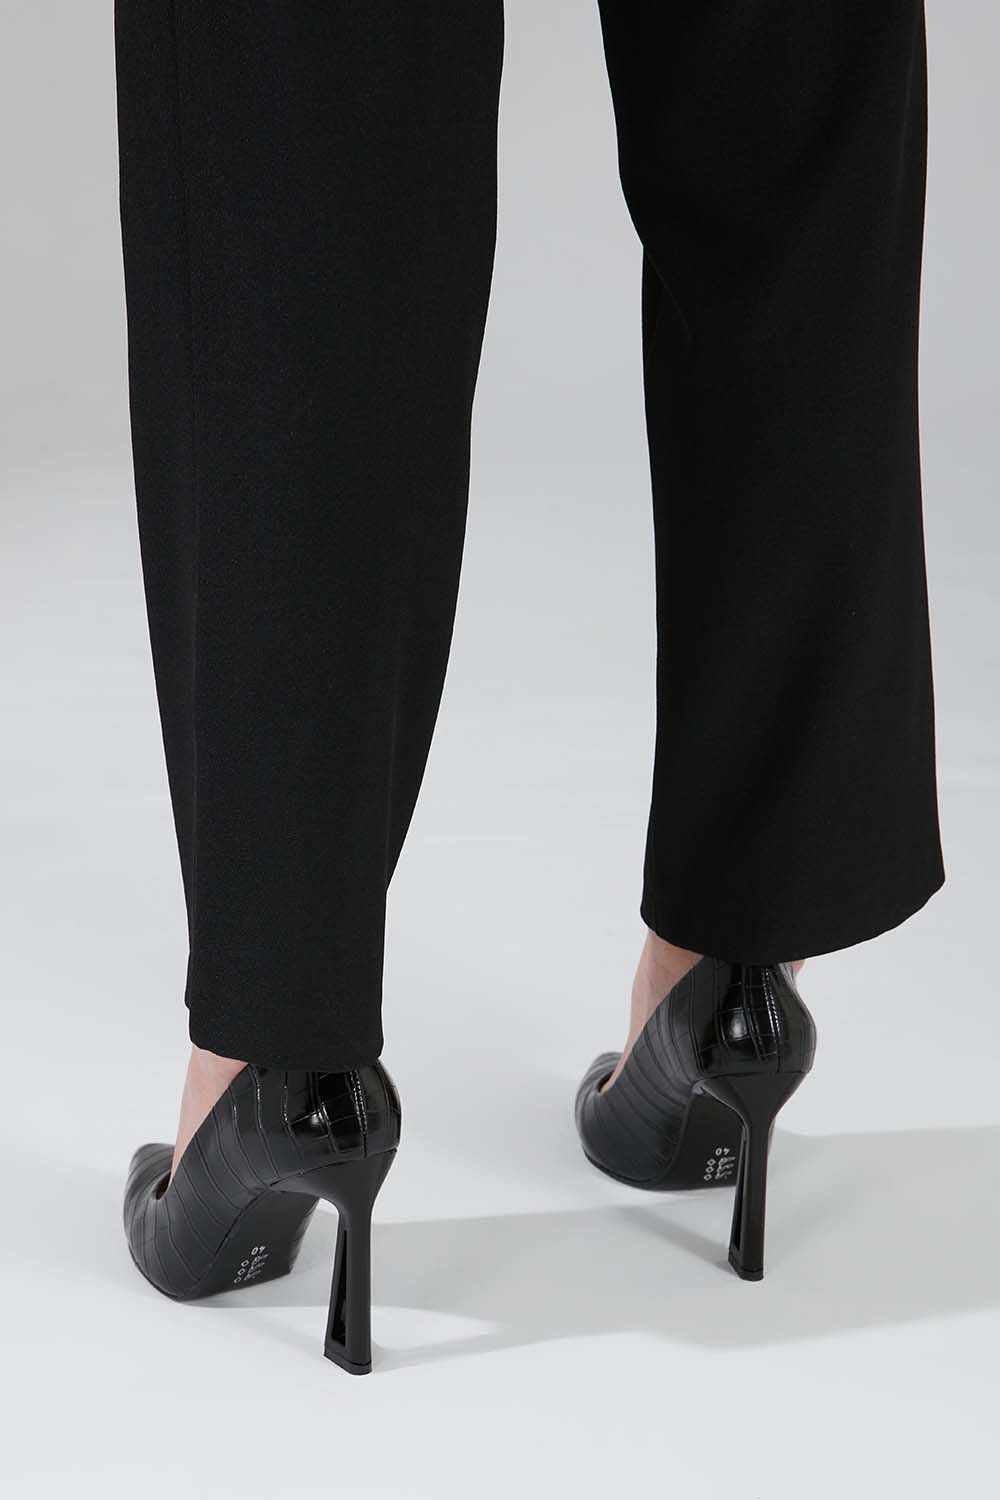 Kroko Tasarım Topuklu Ayakkabı (Siyah)